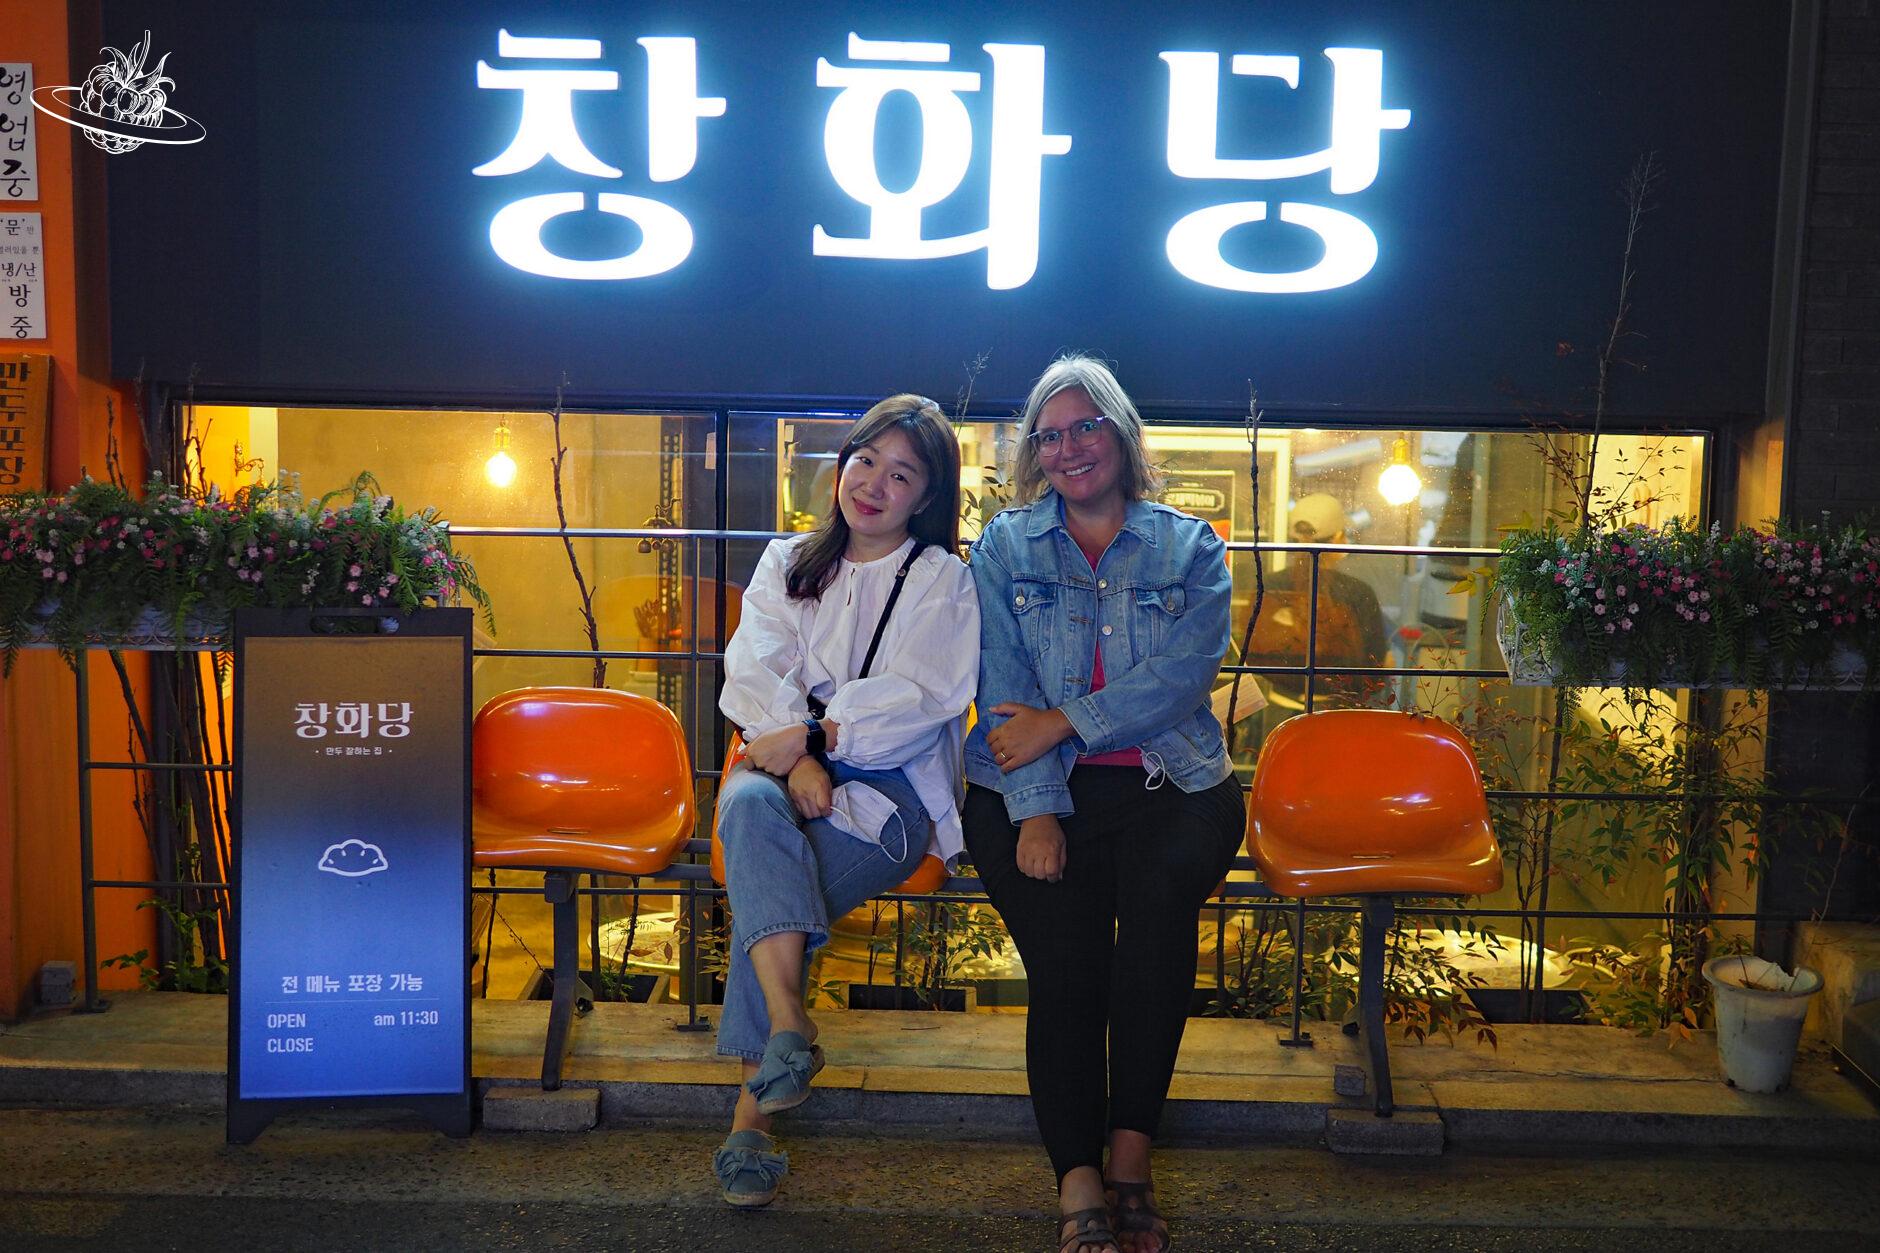 zwei frauen sitzen auf einer bank vor einem koreanischen restaurant